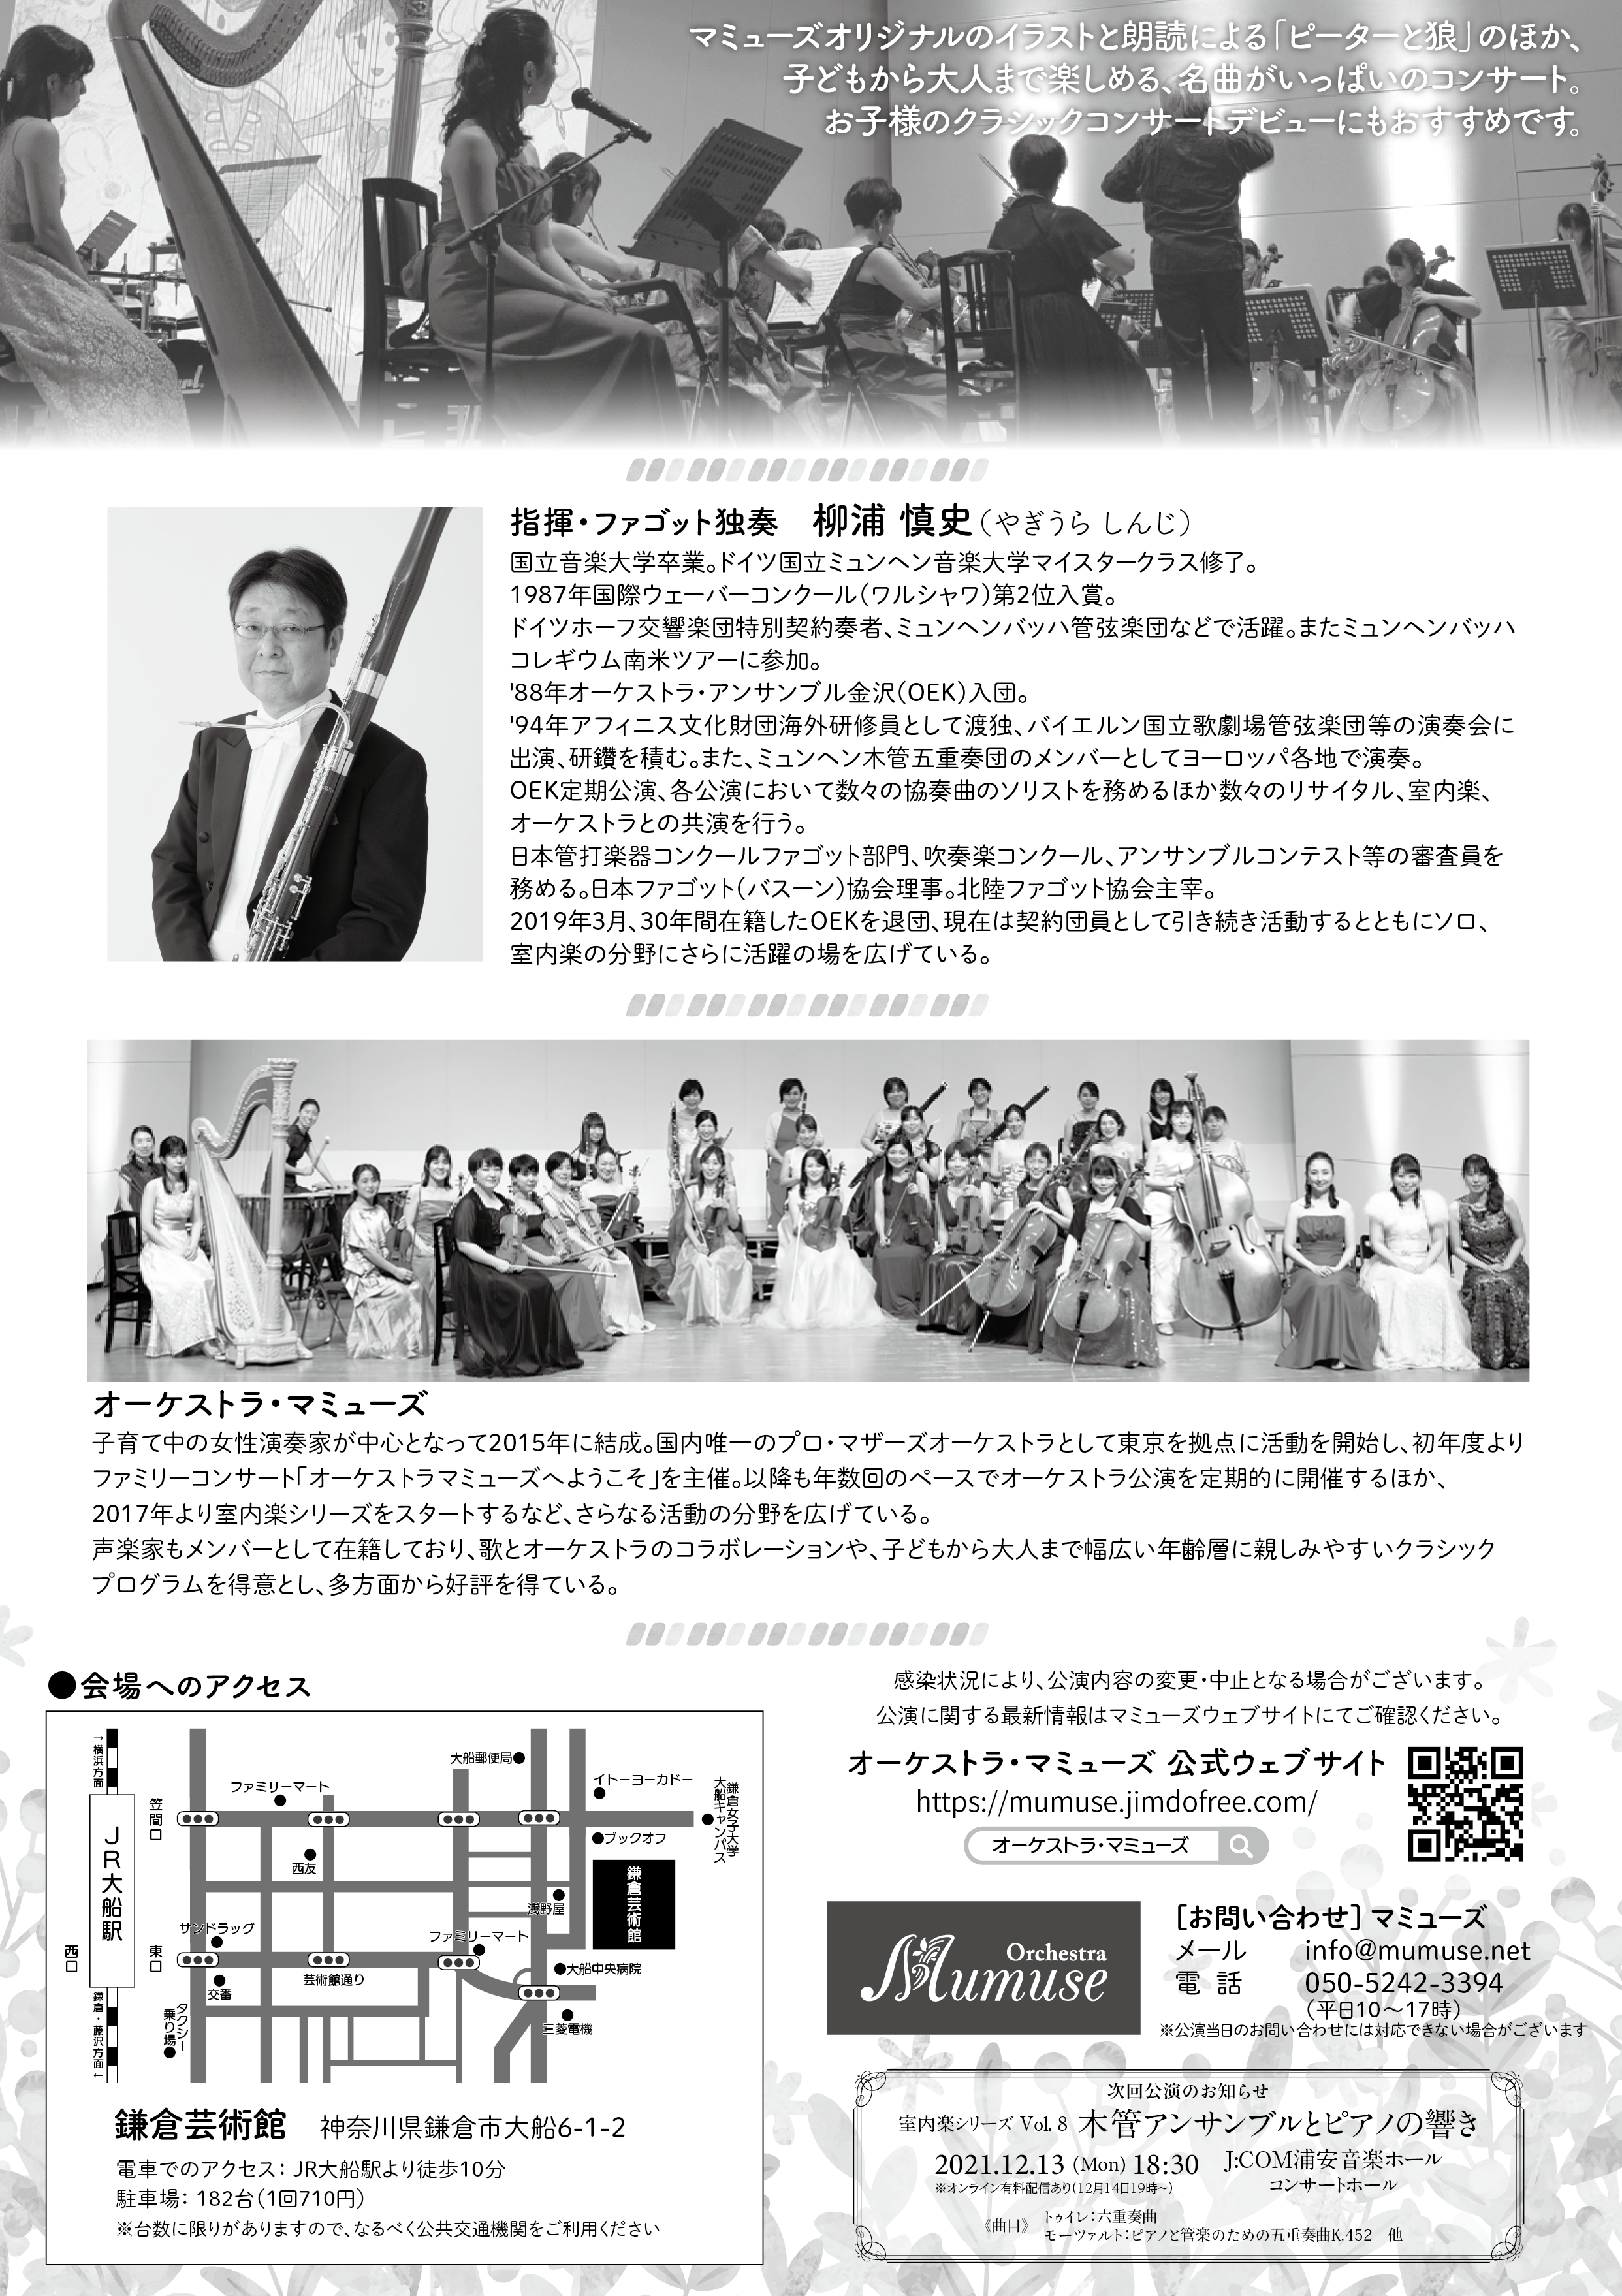 オーケストラmumuseへようこそ神奈川公演 親子で楽しむクラシックコンサート Salon D Art